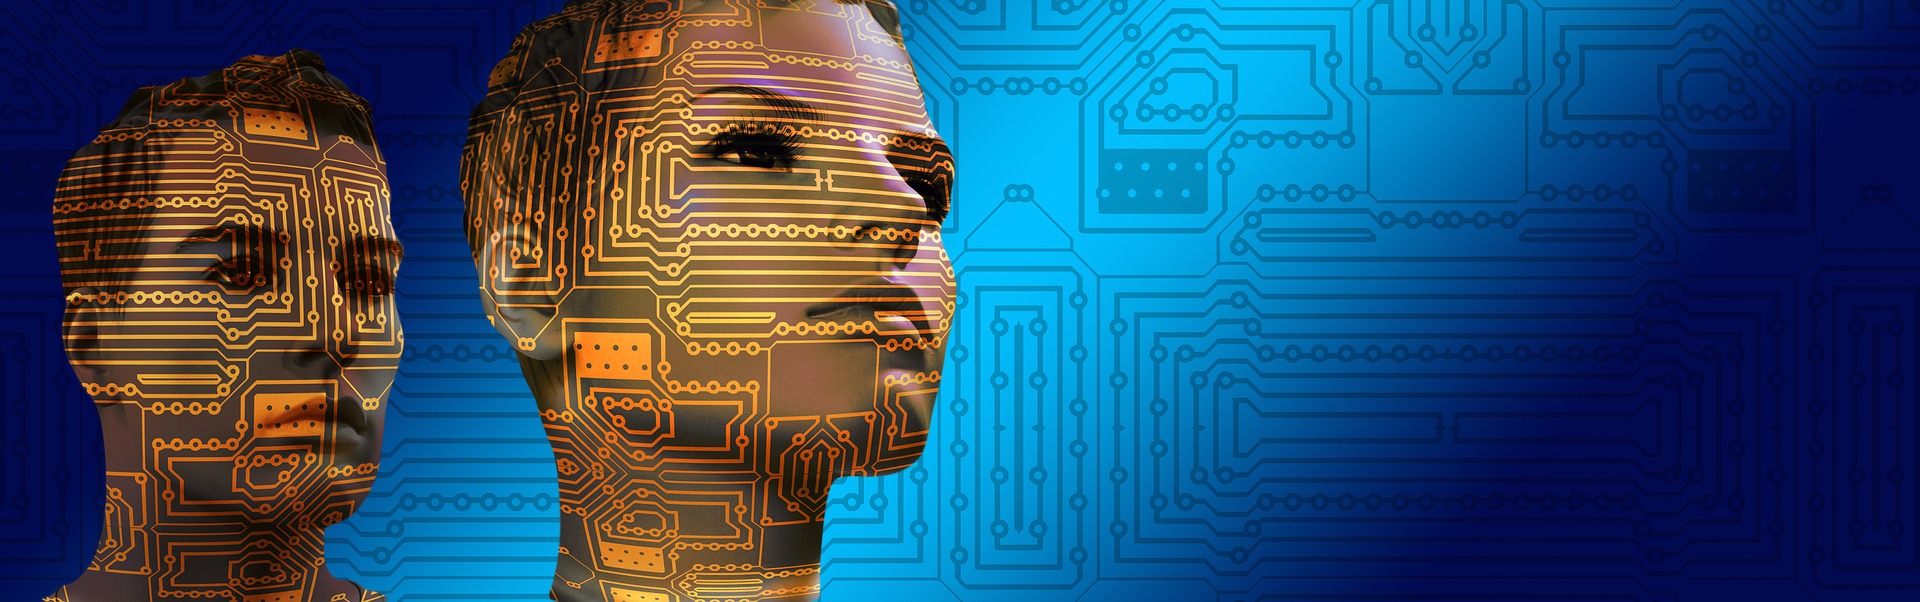 Intelligenza artificiale, le ricerche per renderla sicura